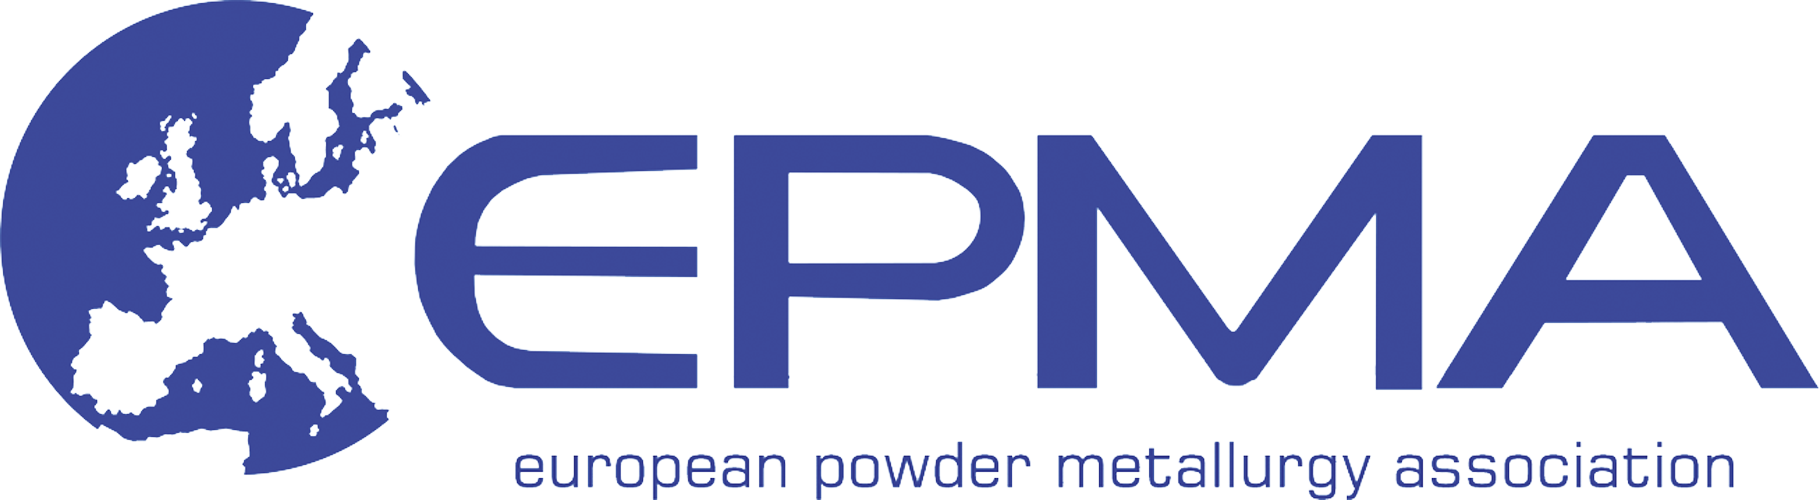 EPMA logo.